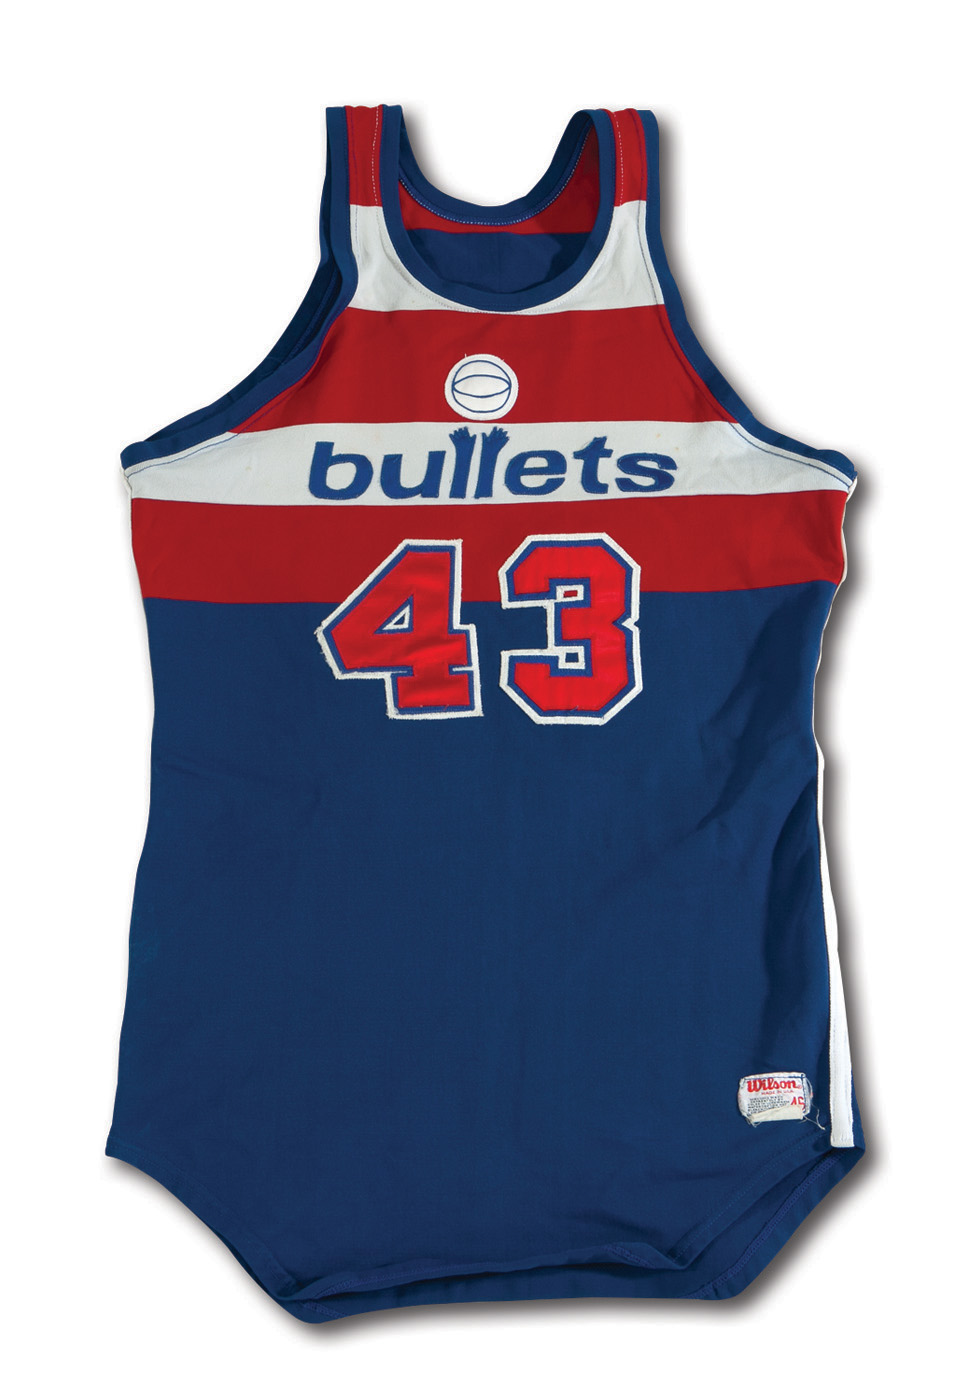 Washington Bullets Apparel, Washington Bullets Jerseys, Washington Bullets  Gear